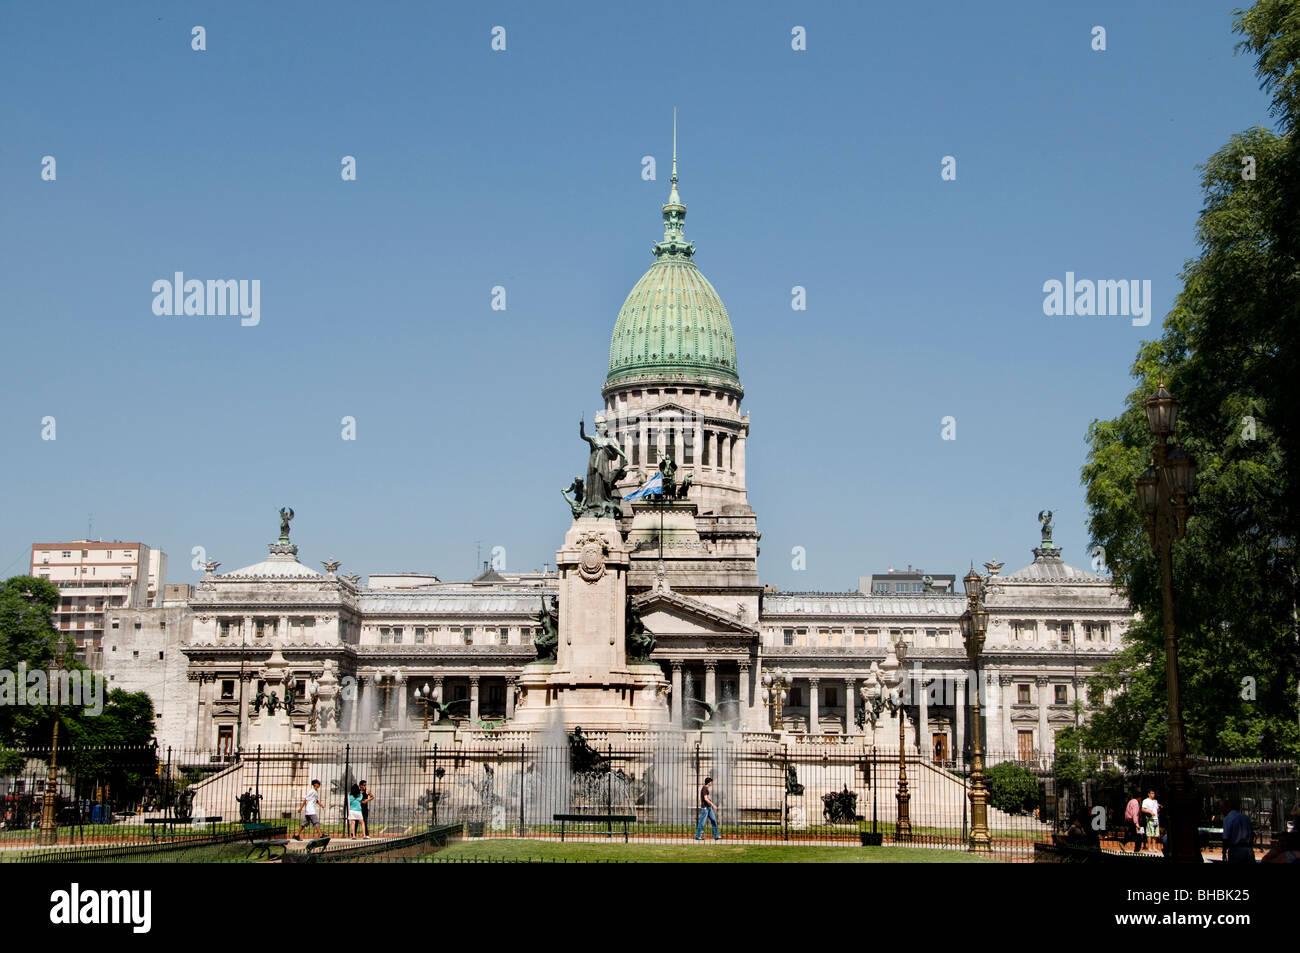 Palacio del Congreso des congrès de Buenos Aires Argentine Monserrat gouvernement Banque D'Images